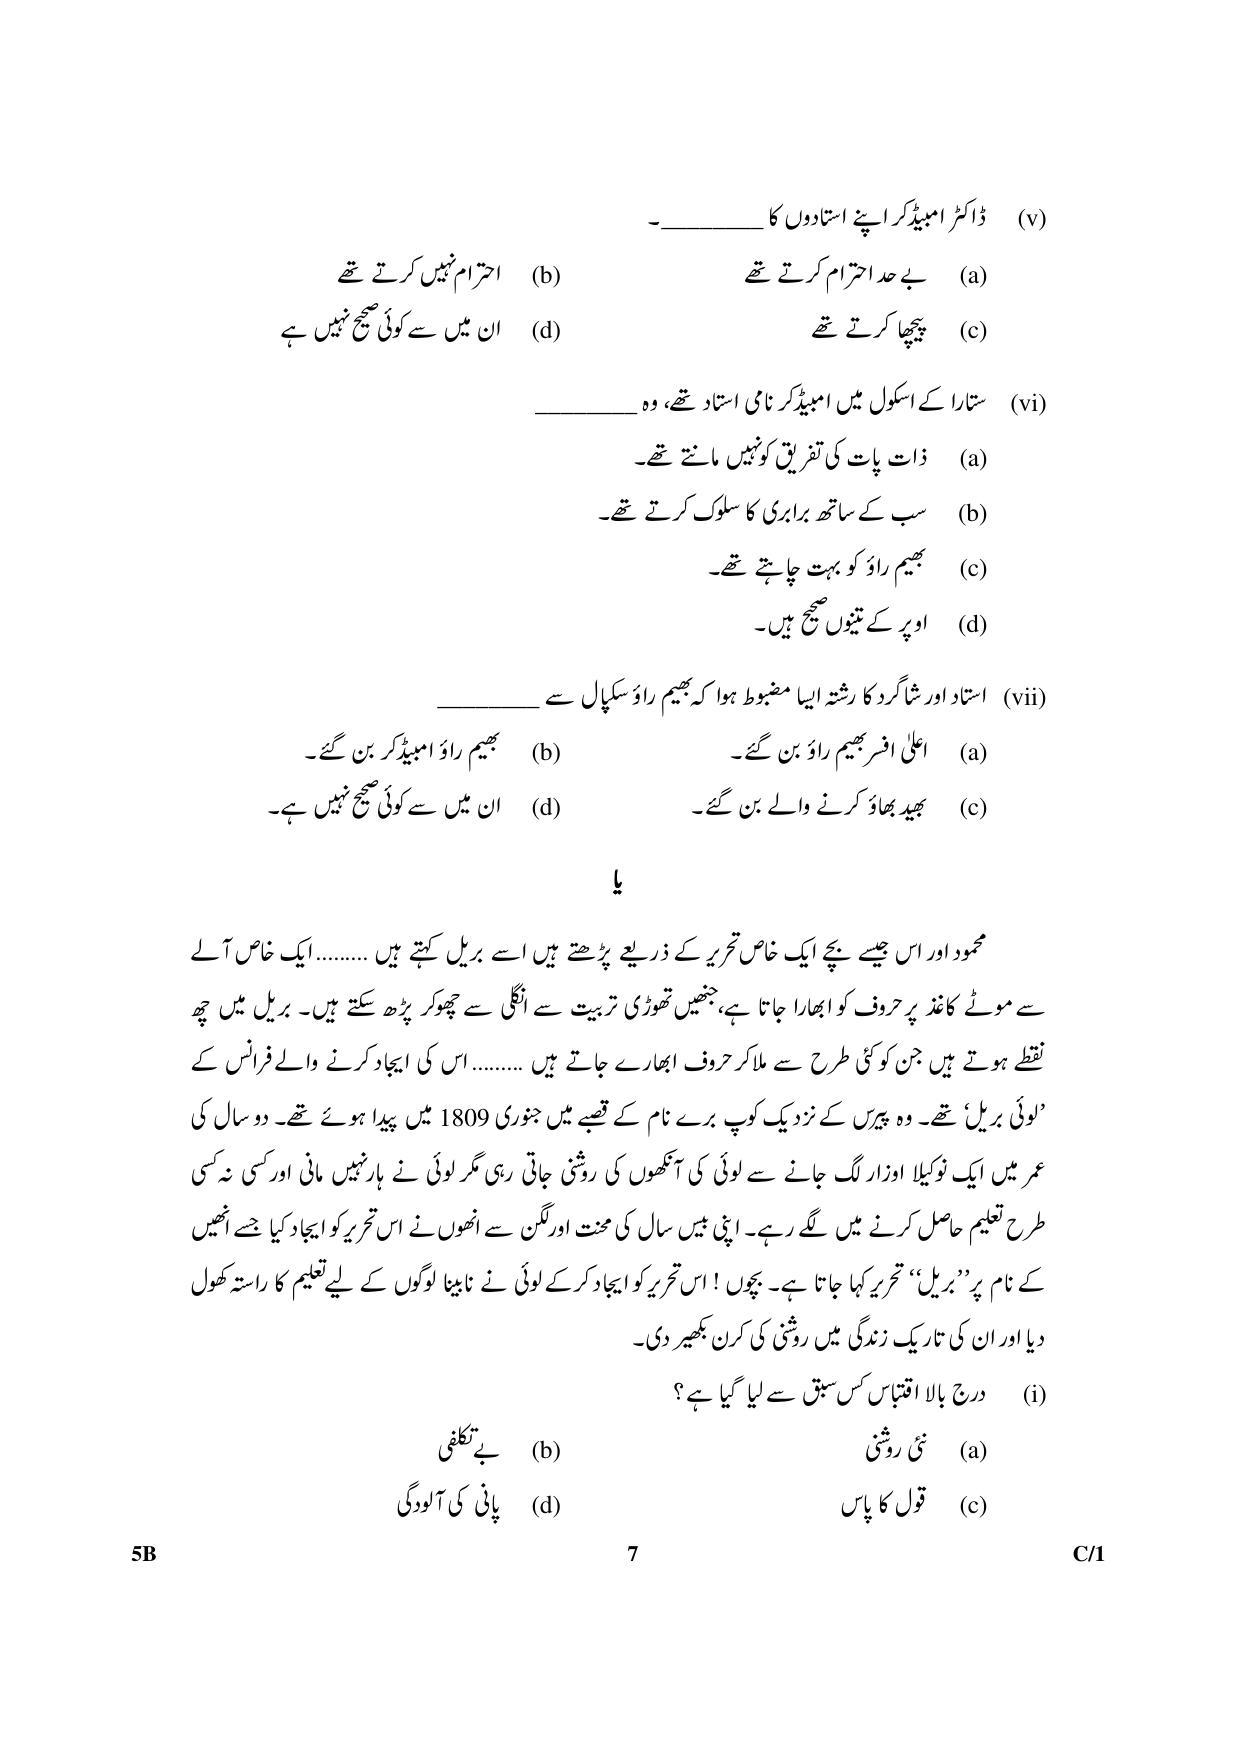 CBSE Class 10 5B Urdu (Course B) 2018 Compartment Question Paper - Page 7